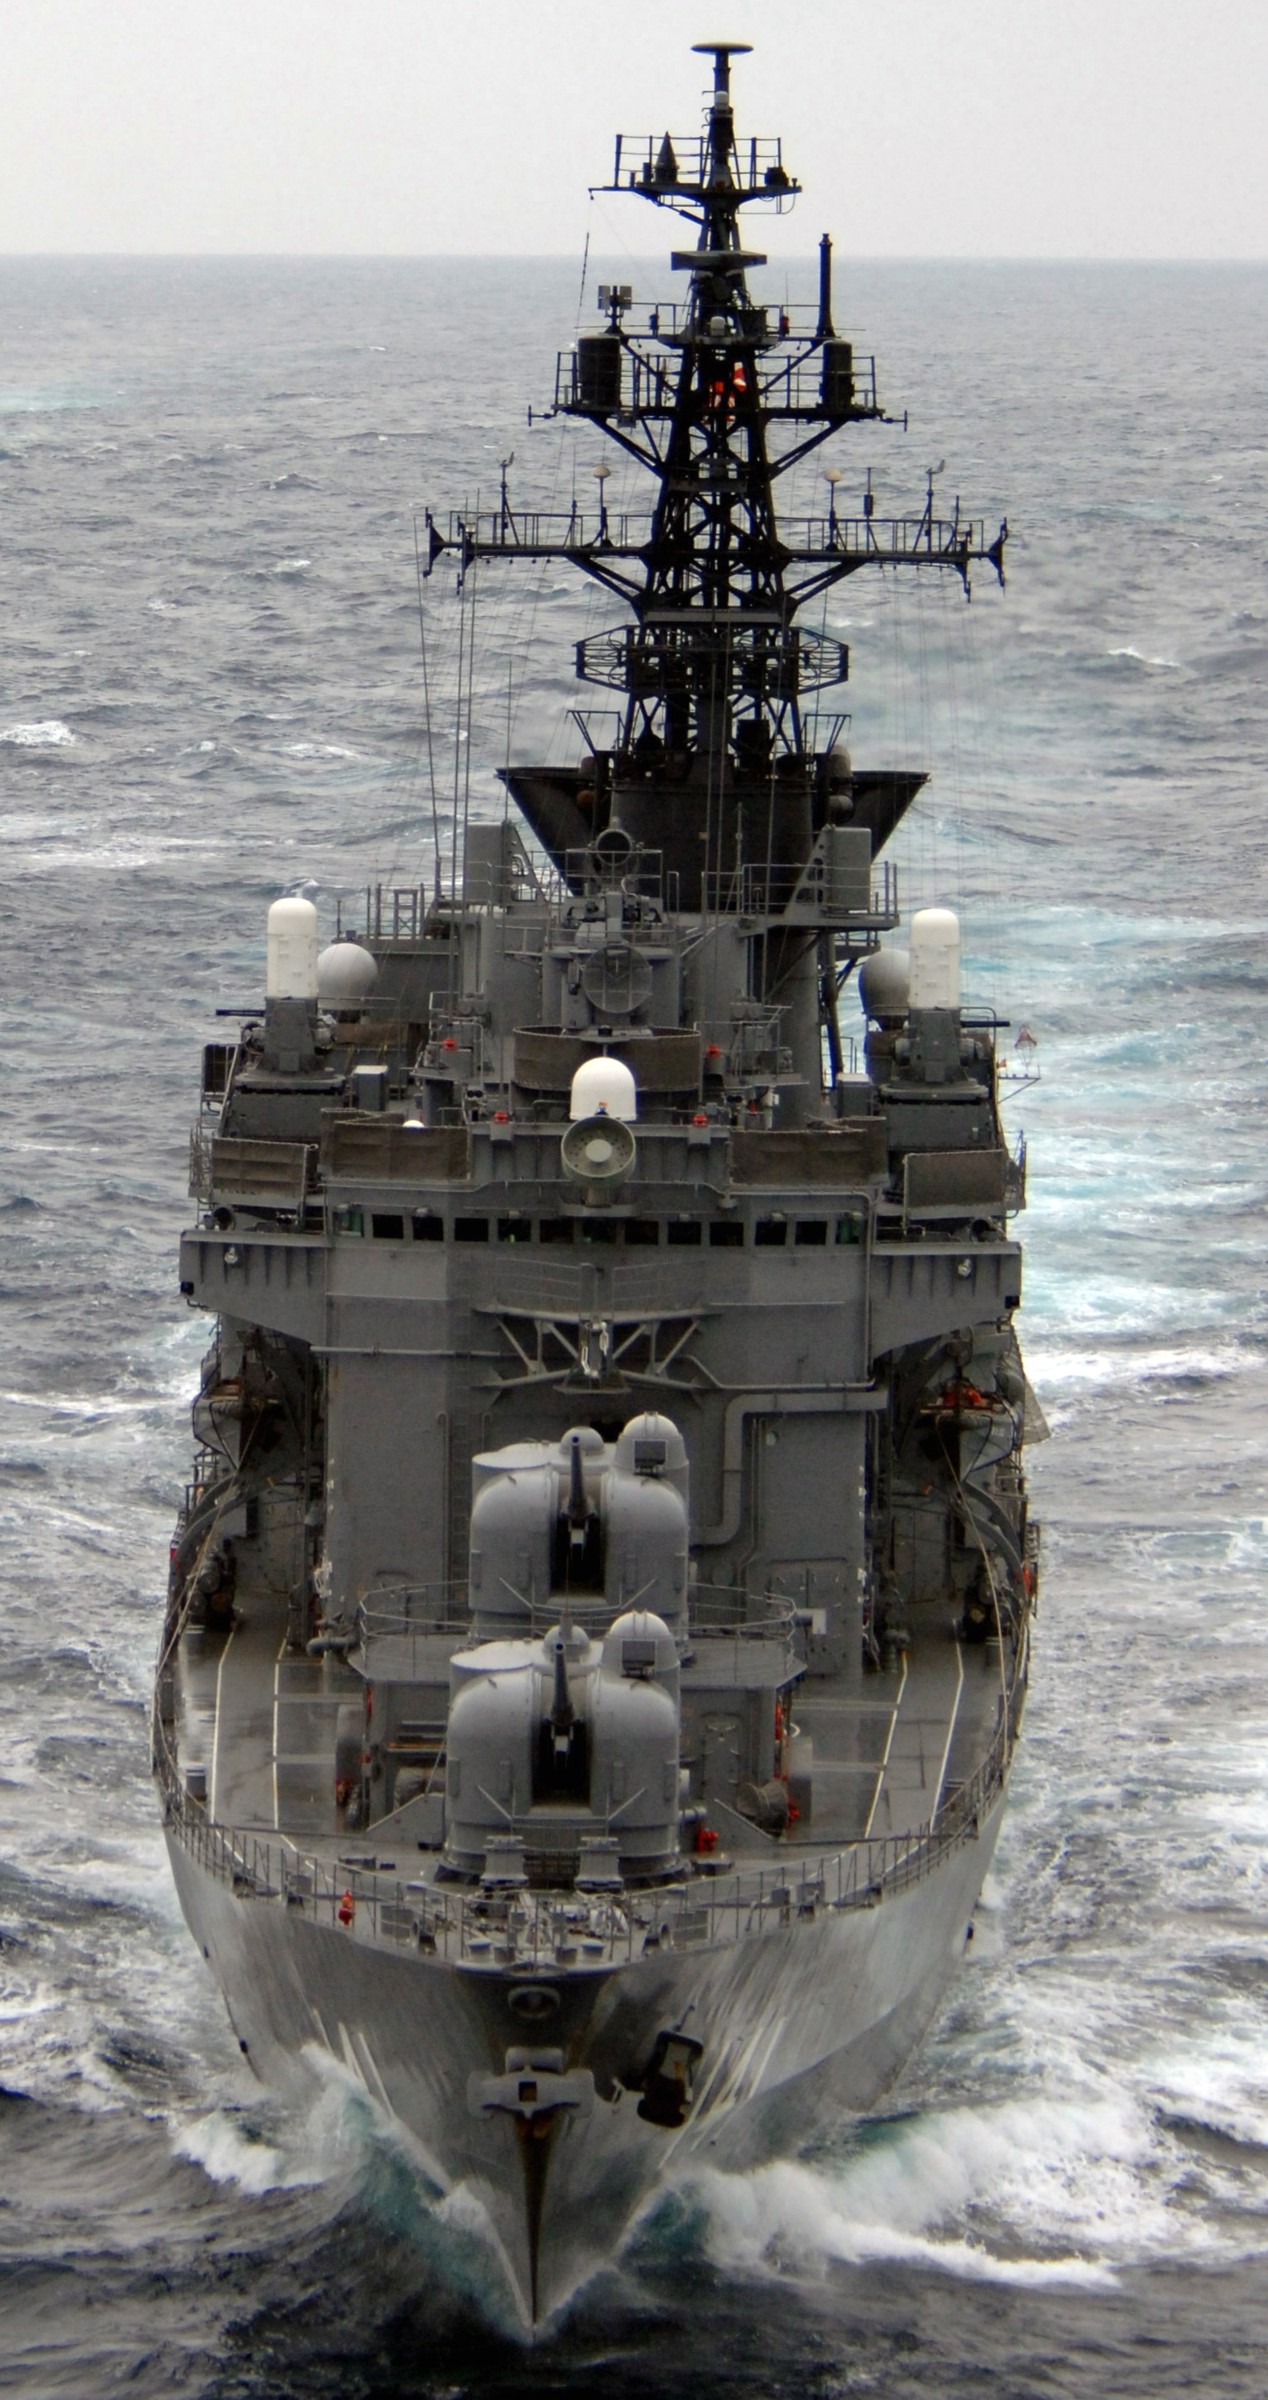 ddh-141 jds haruna helicopter destroyer japan maritime self defense force 11